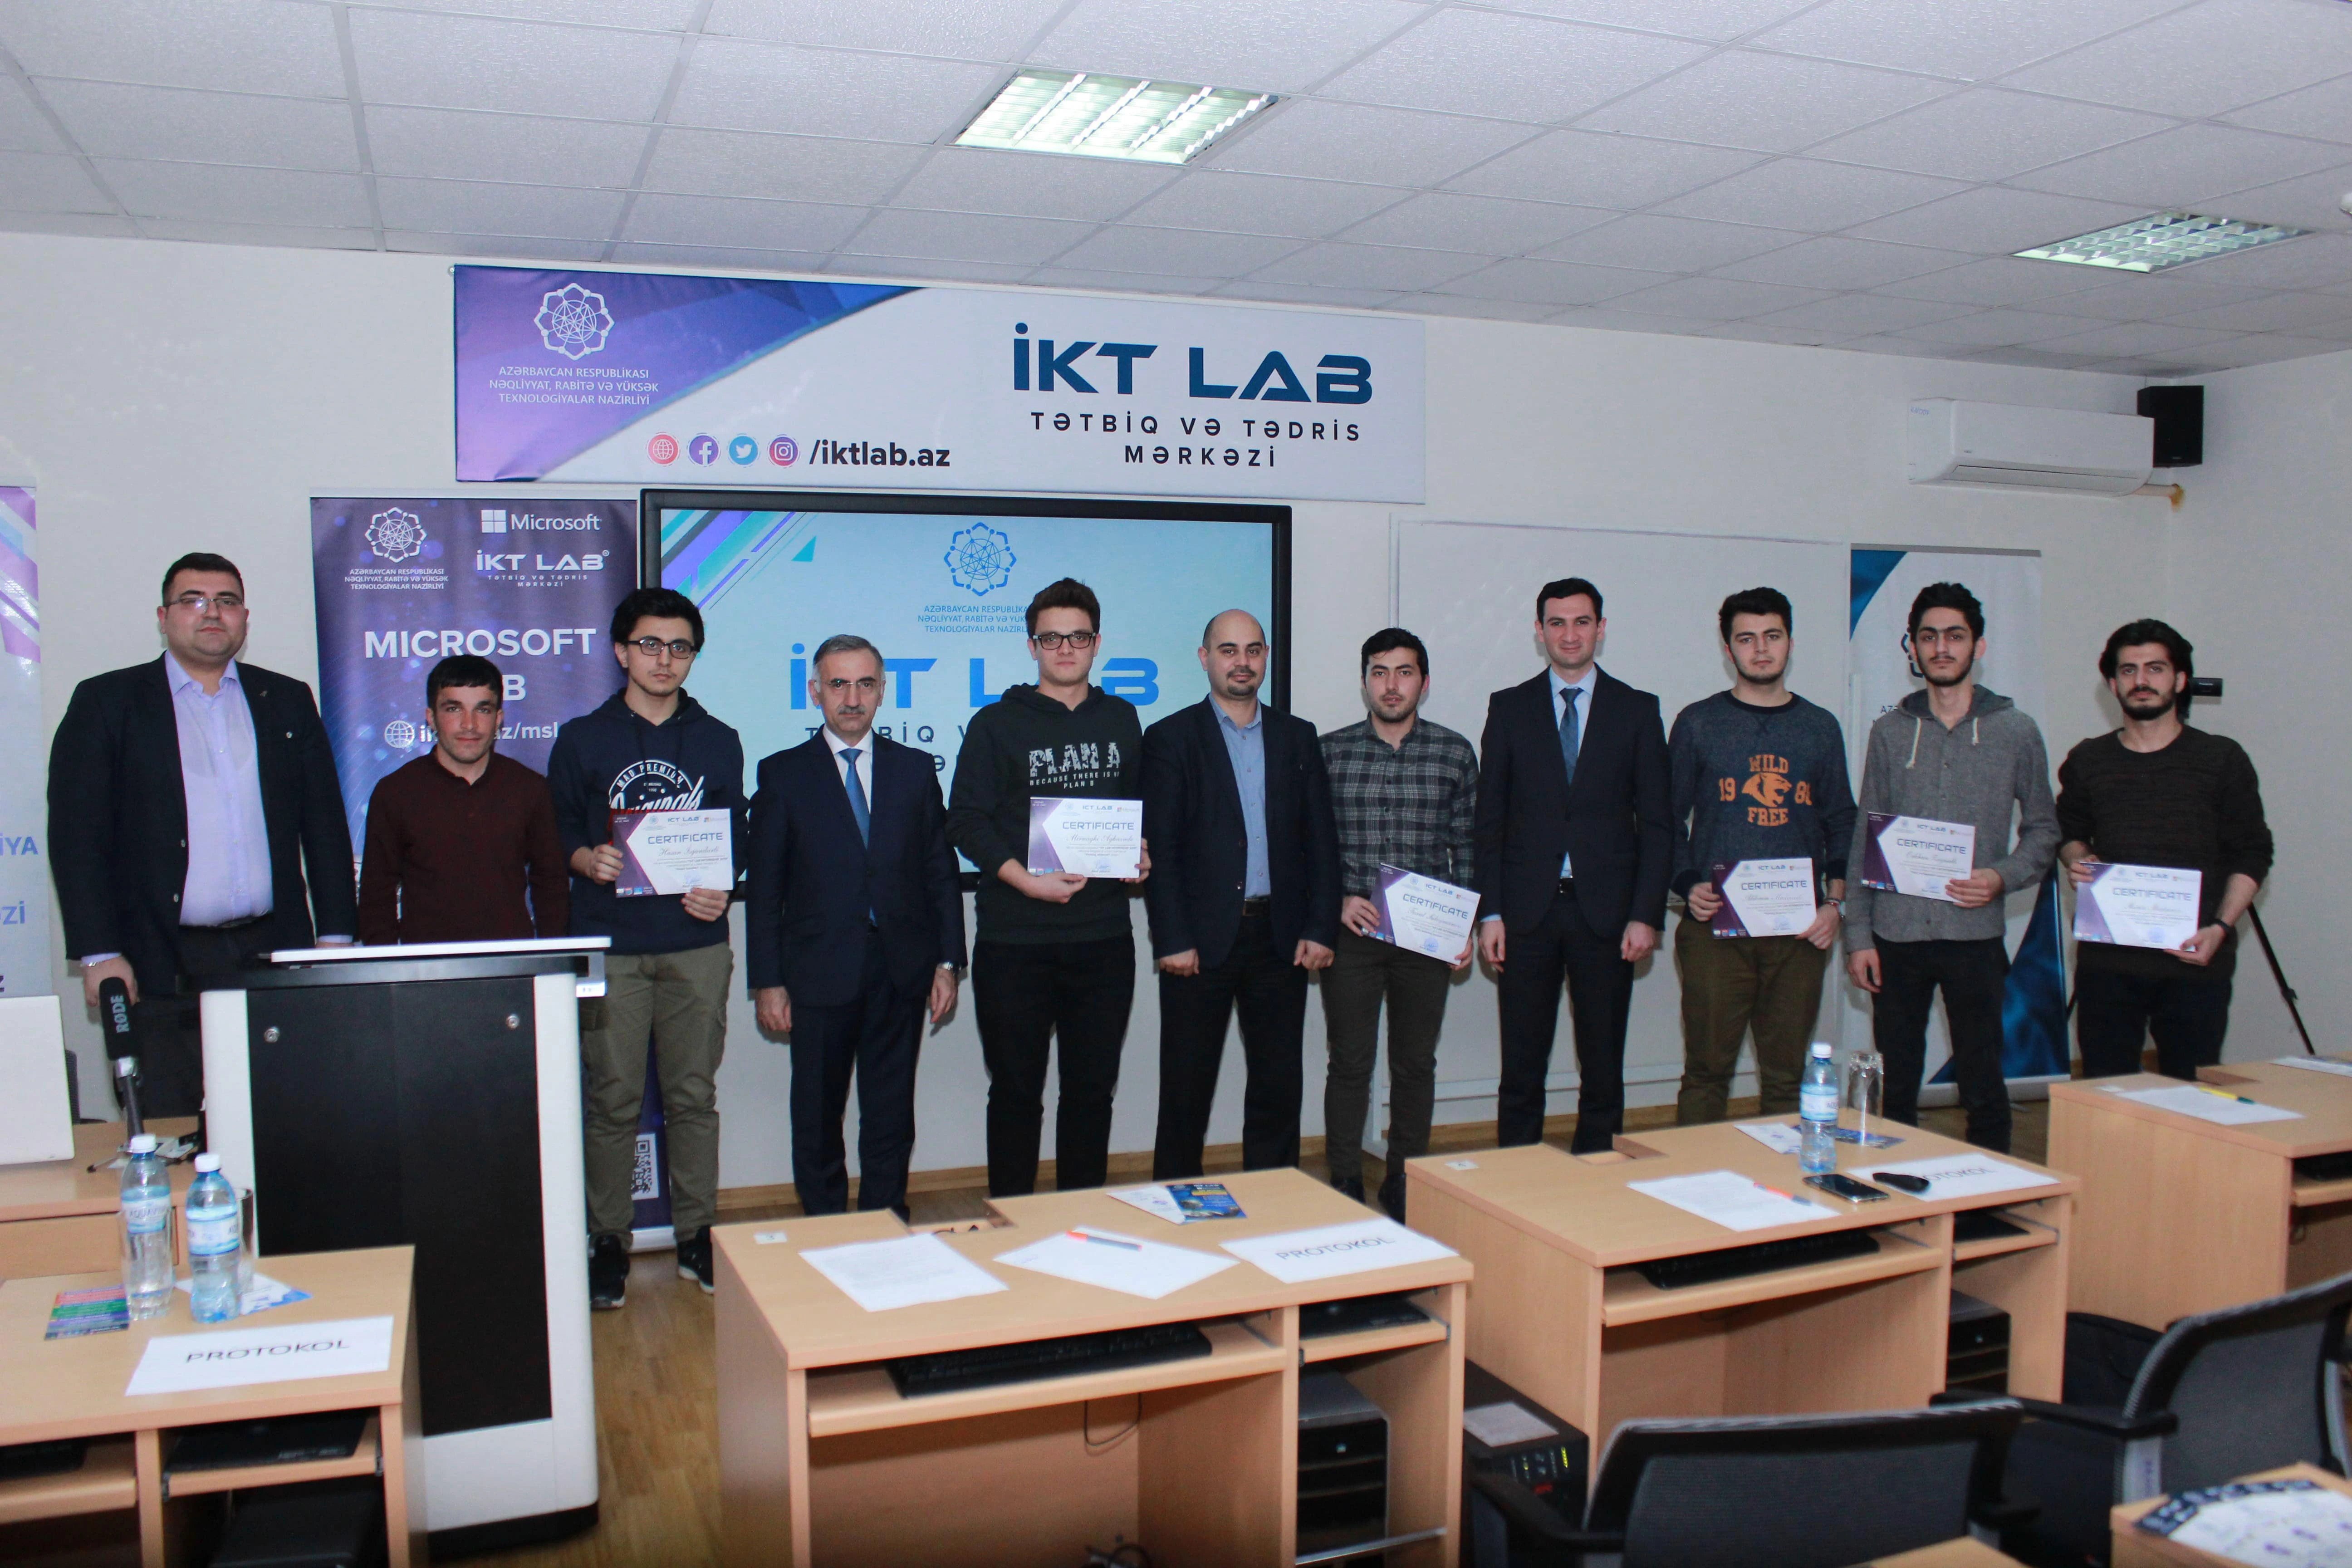 “Əşyaların interneti” laboratoriyasının ilk təcrübə proqramının iştirakçılarına sertifikatlar təqdim olunub